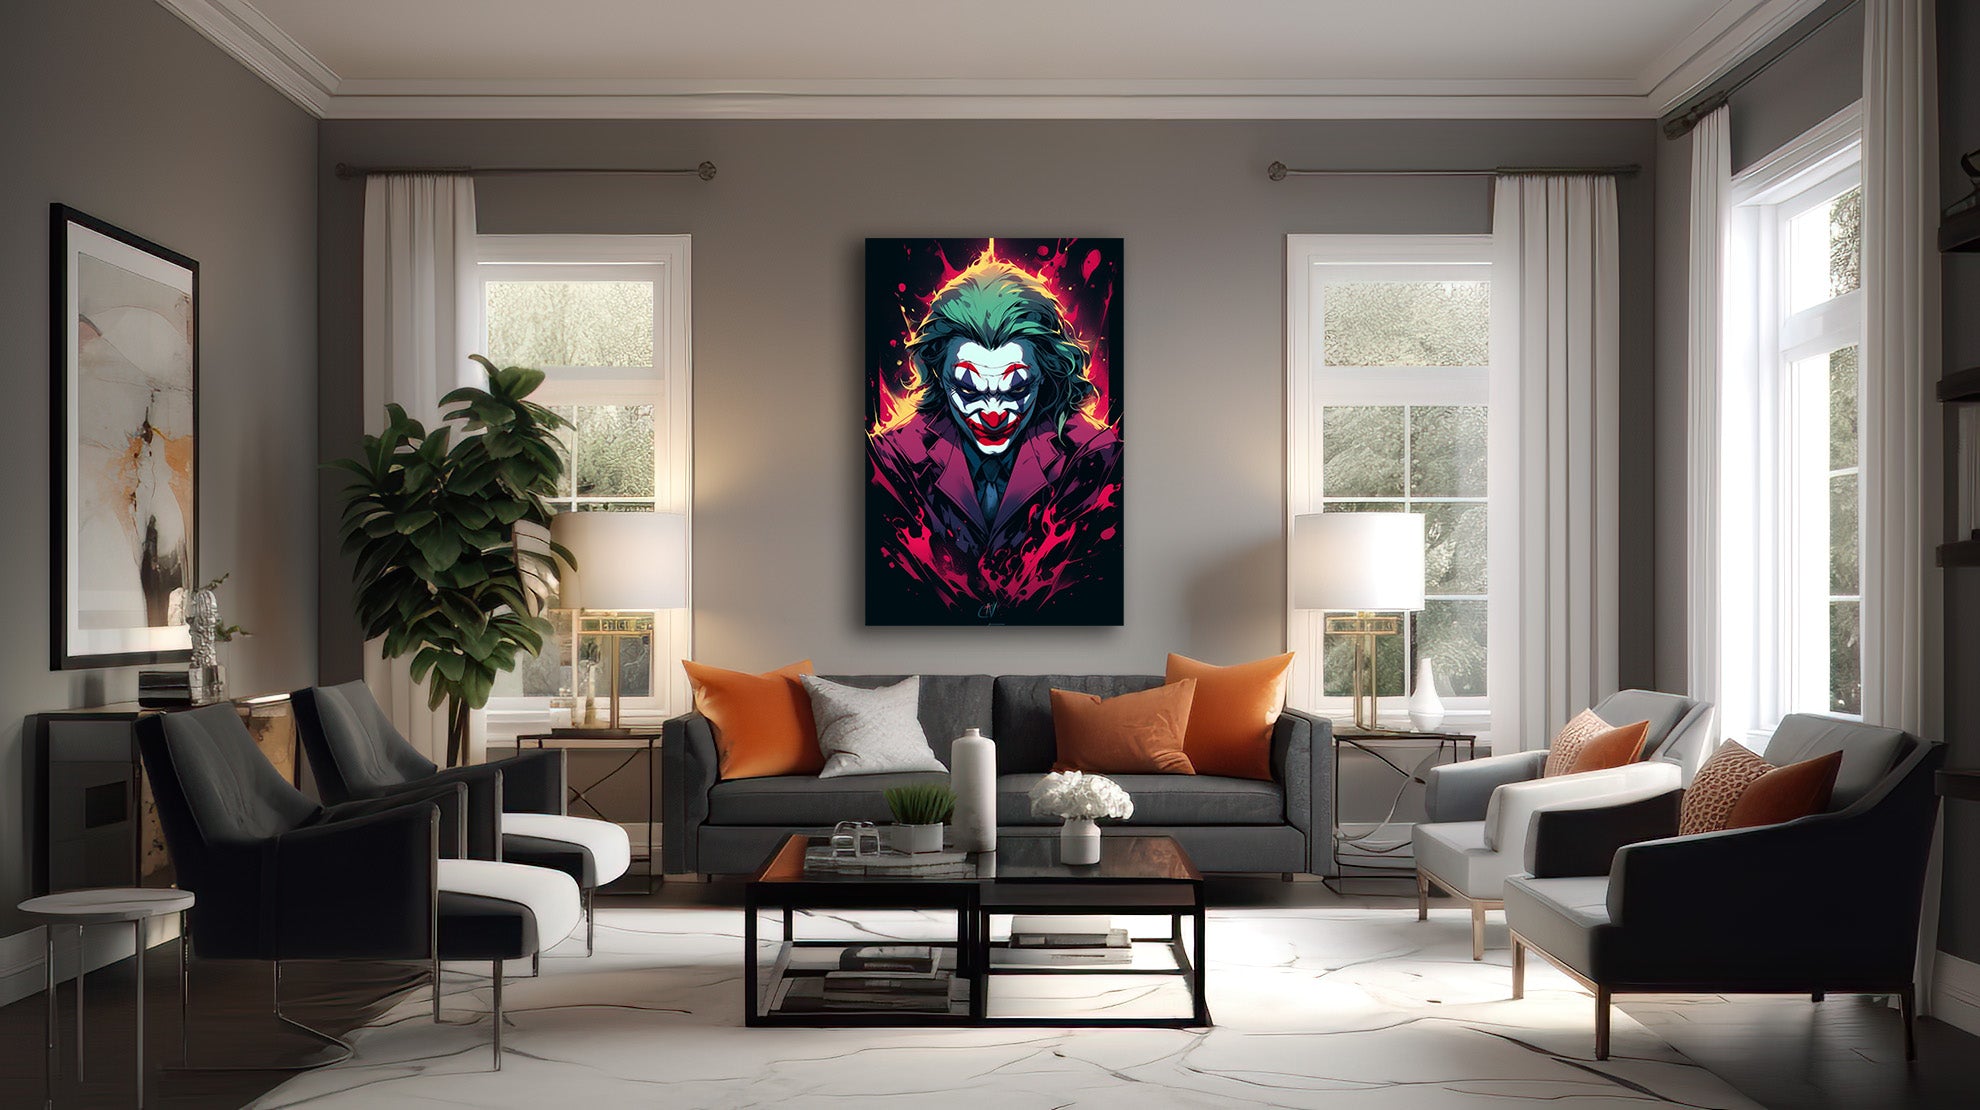 Feuriges Grinsen: Der Joker in der Pop-Art